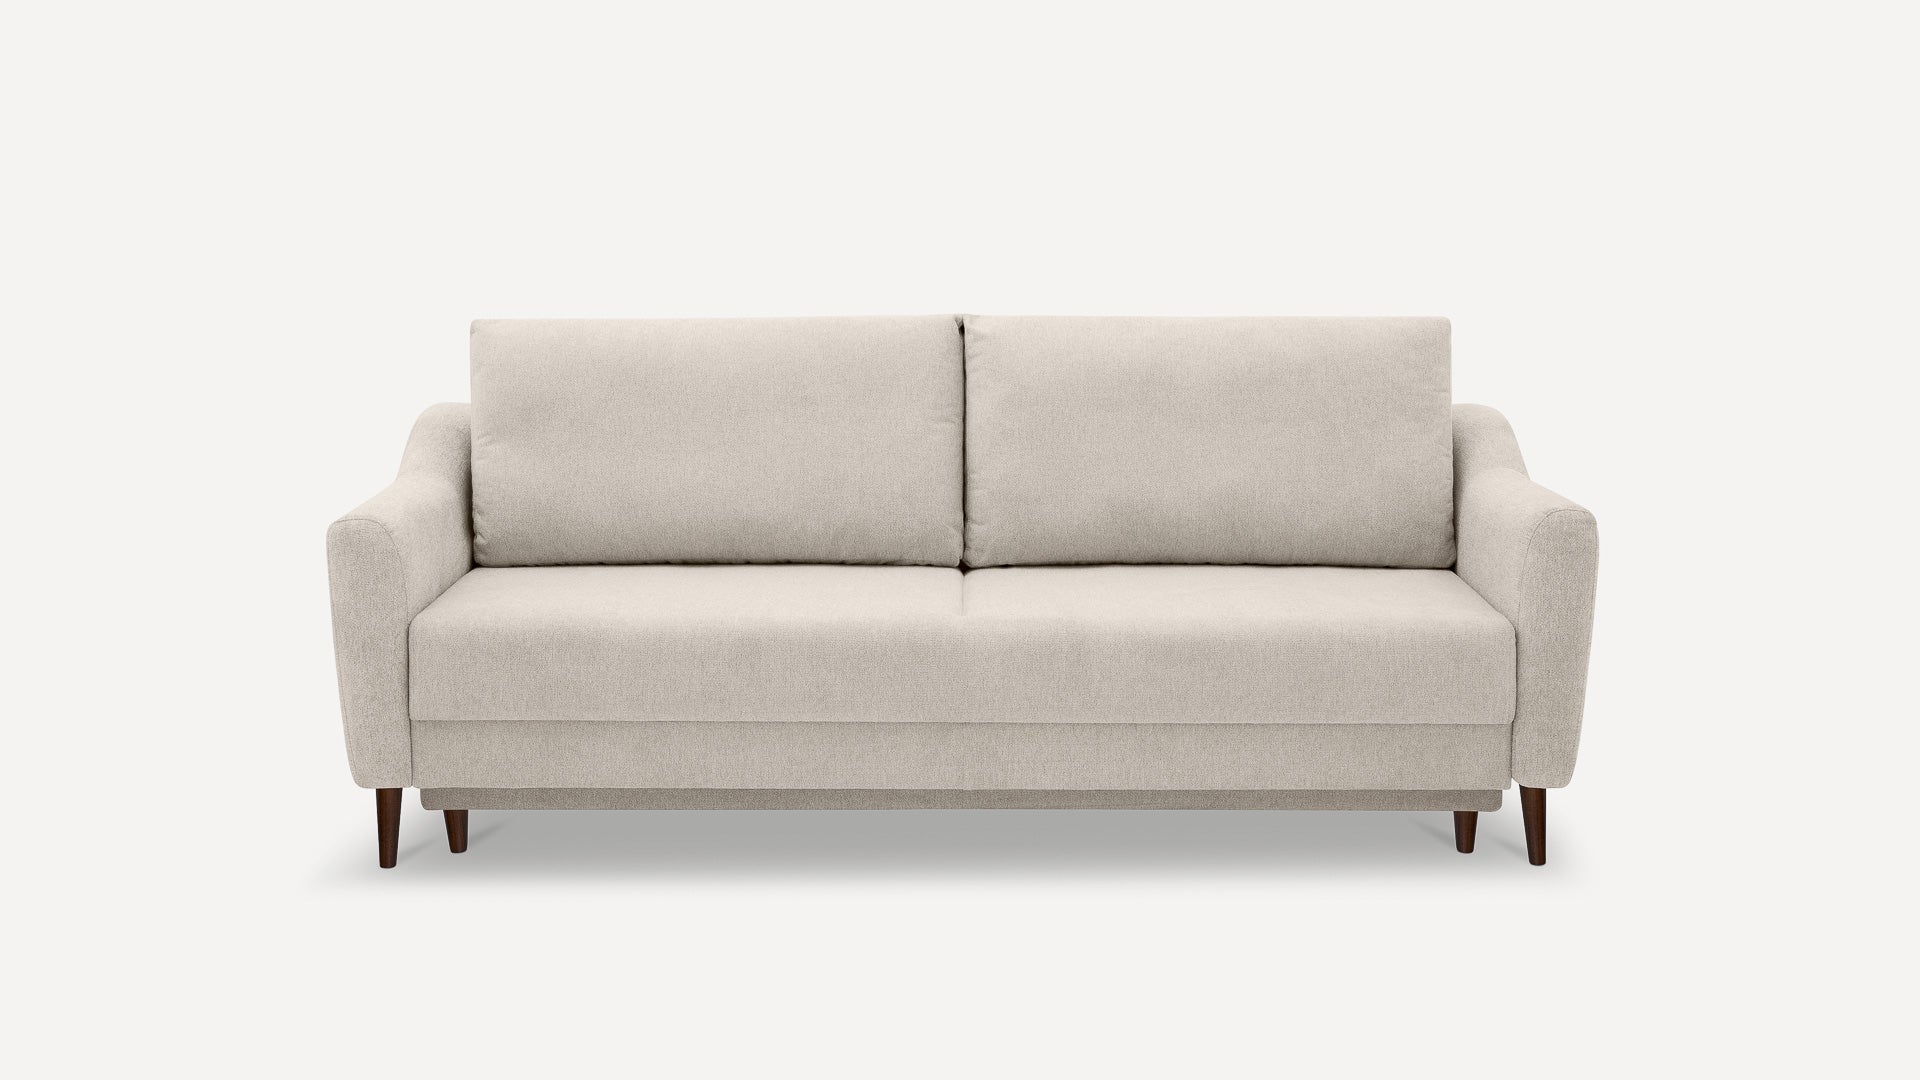 Sofa Benet DL Szenil - Benet